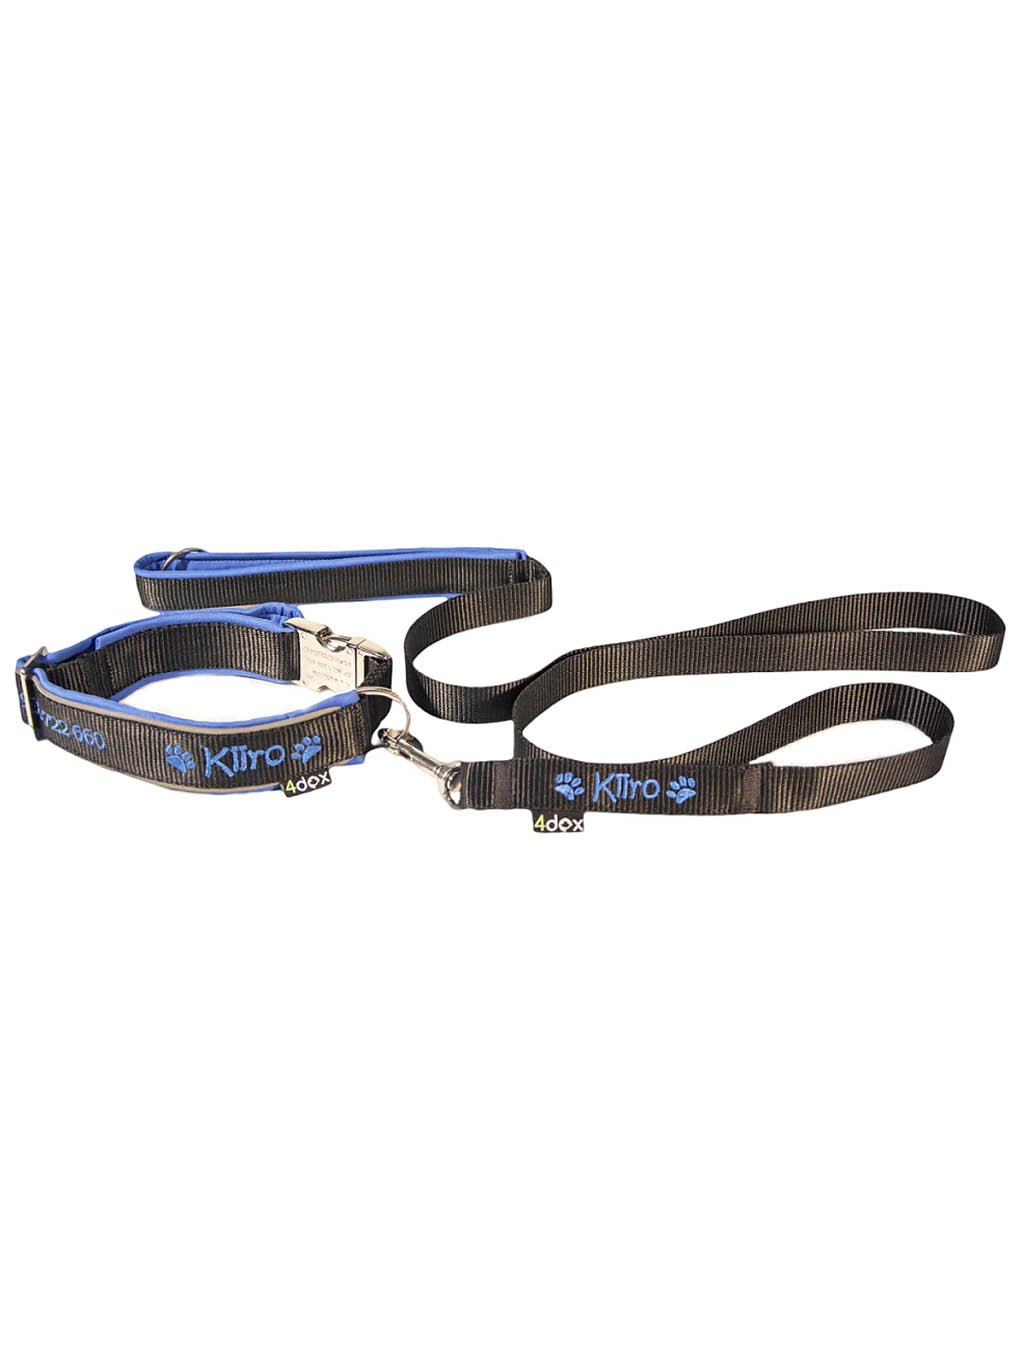 Classic leash - customized leash